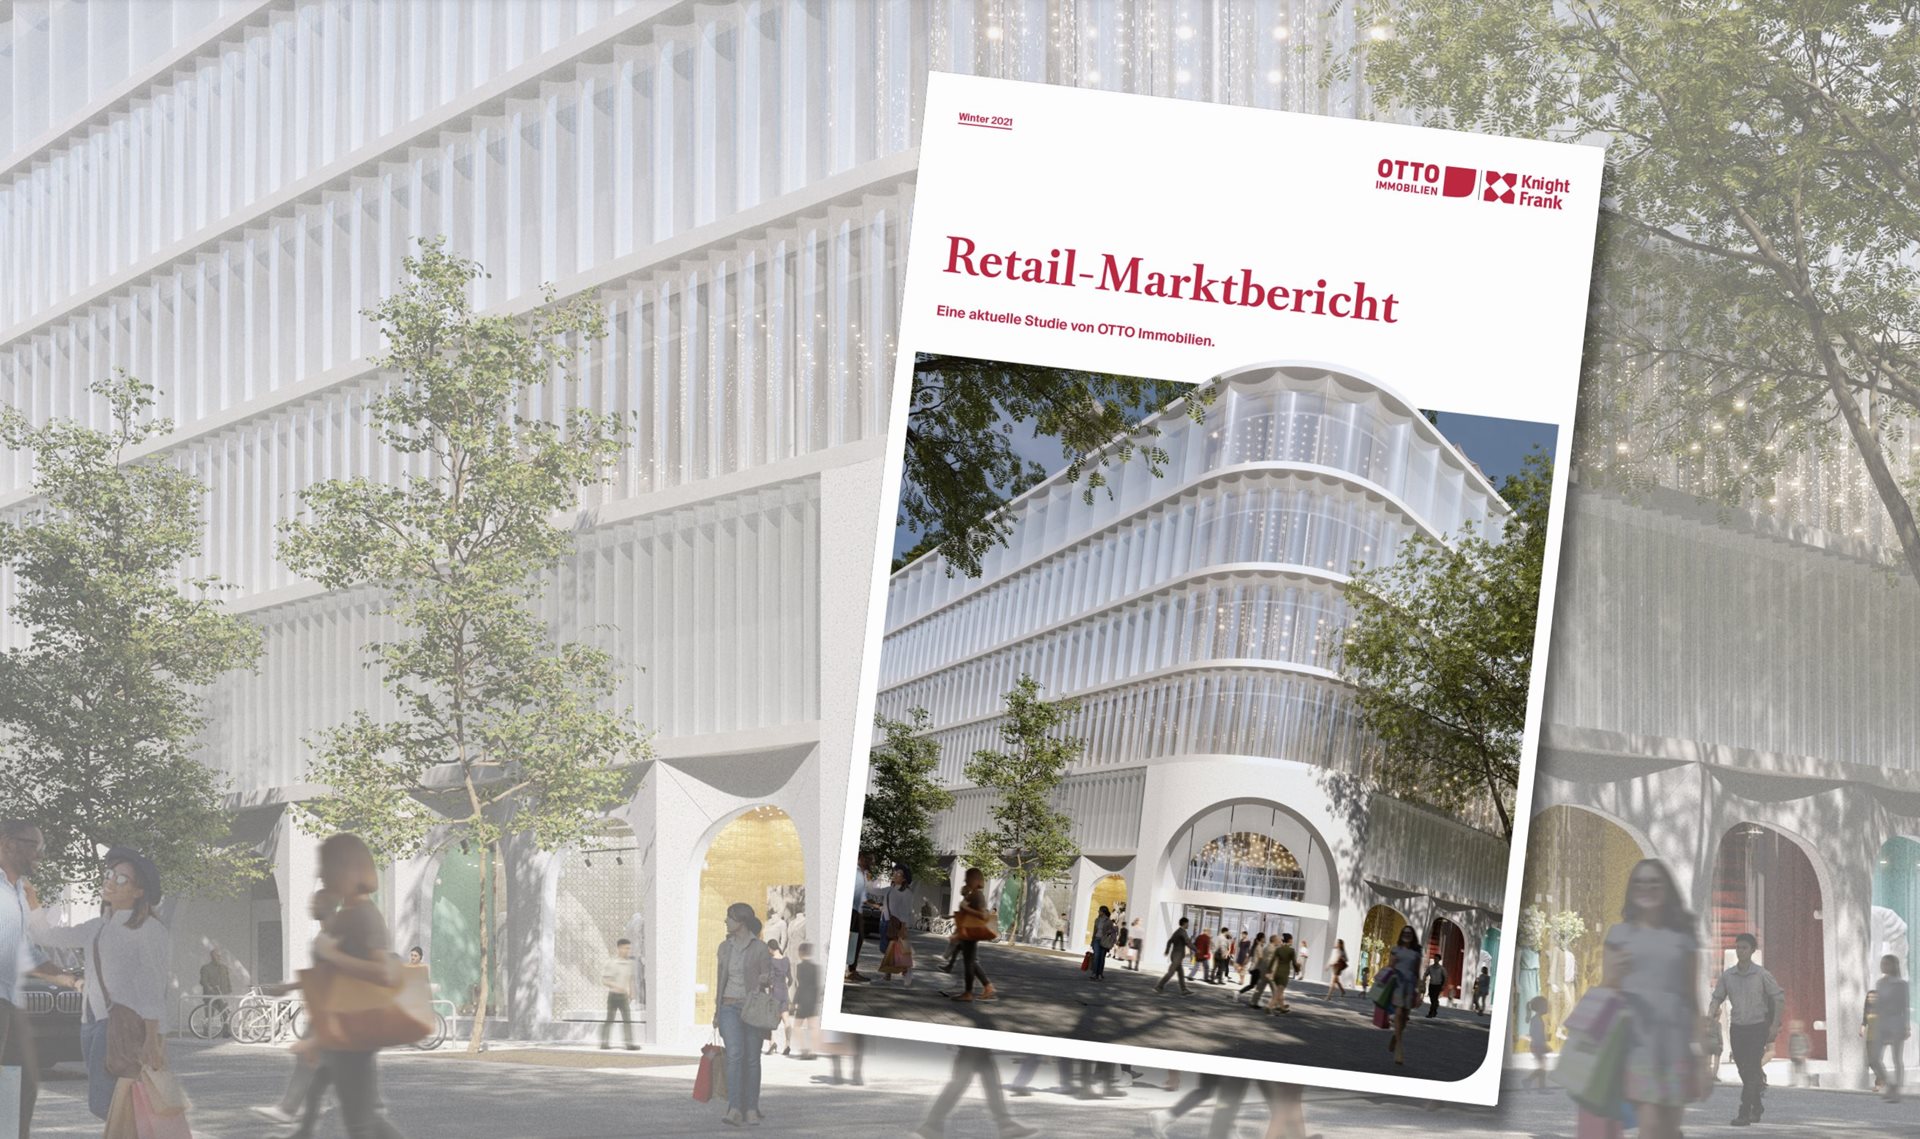 Retail-Marktbericht von Otto Immobilien, 2021